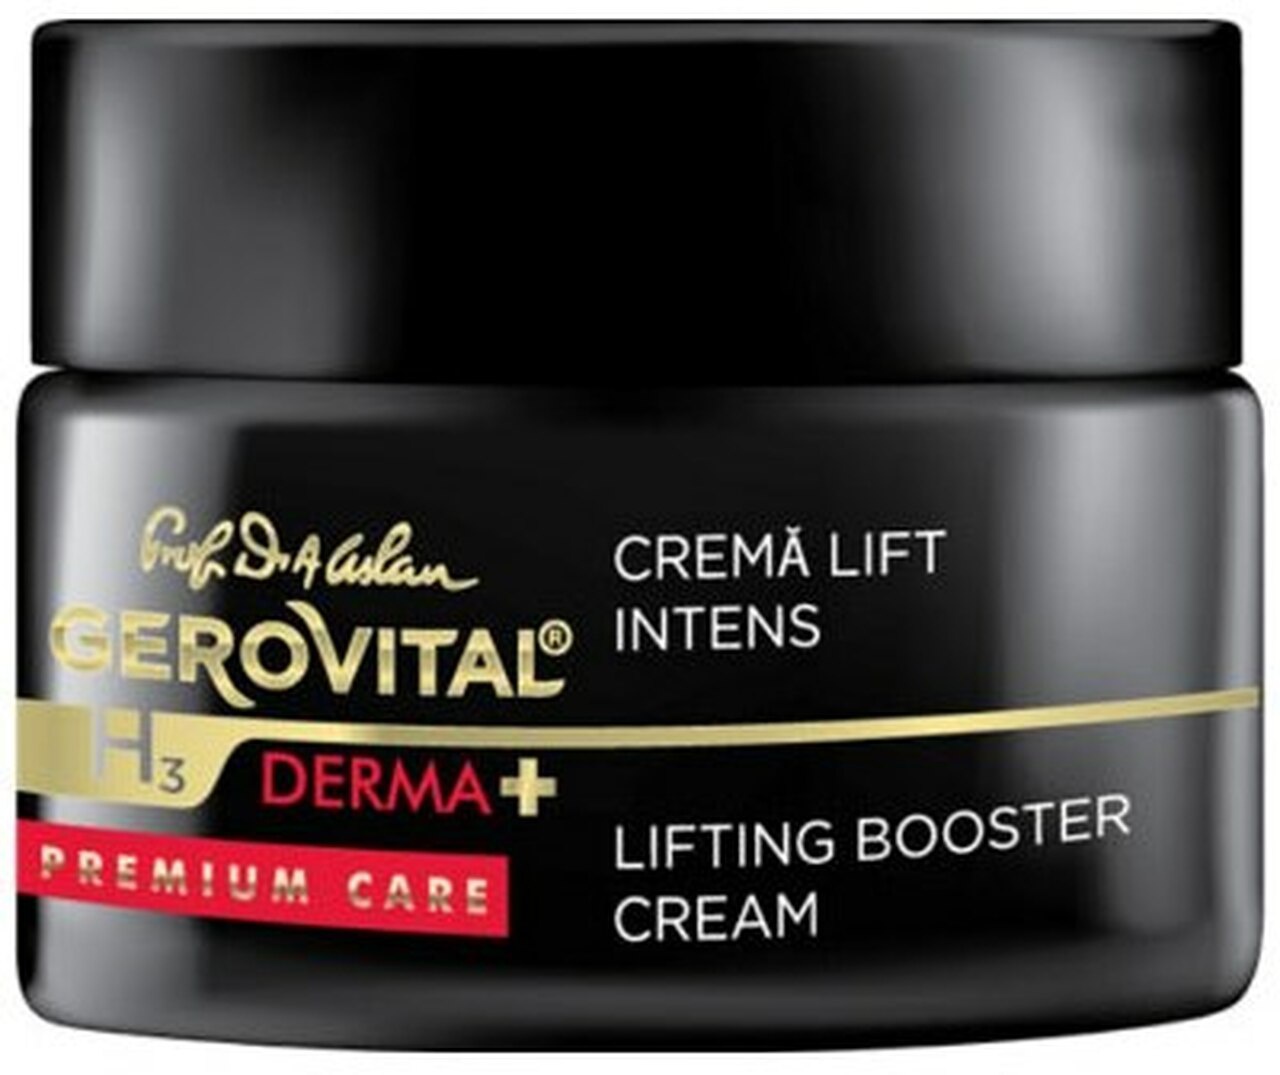 Gerovital Lift Intense Premium Care Cream